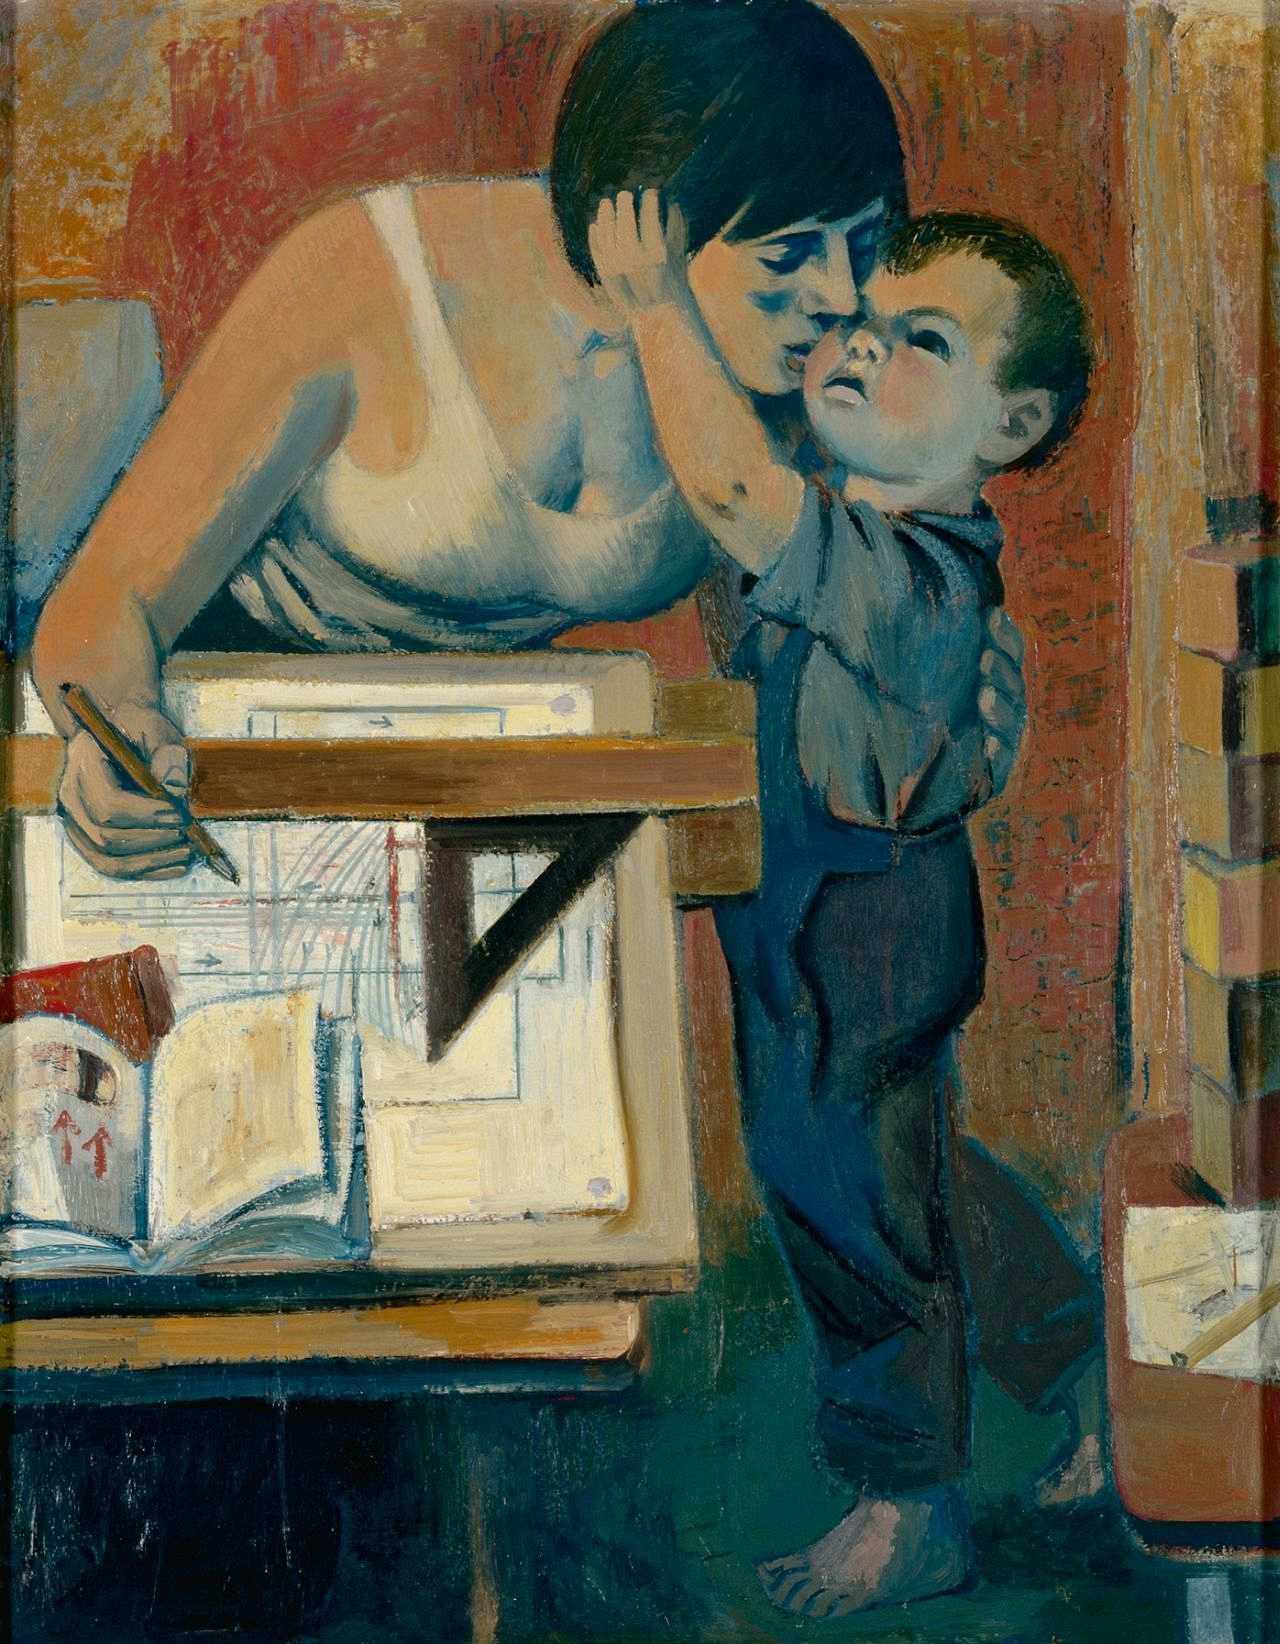 Gemälde mit einer Frau, die an einem Tisch sitzt. Vor ihr liegen Papier, Geodreieck und ein Buch. Sie beugt sich zu einem Kind herunter, das die Arme um ihren Hals legt.